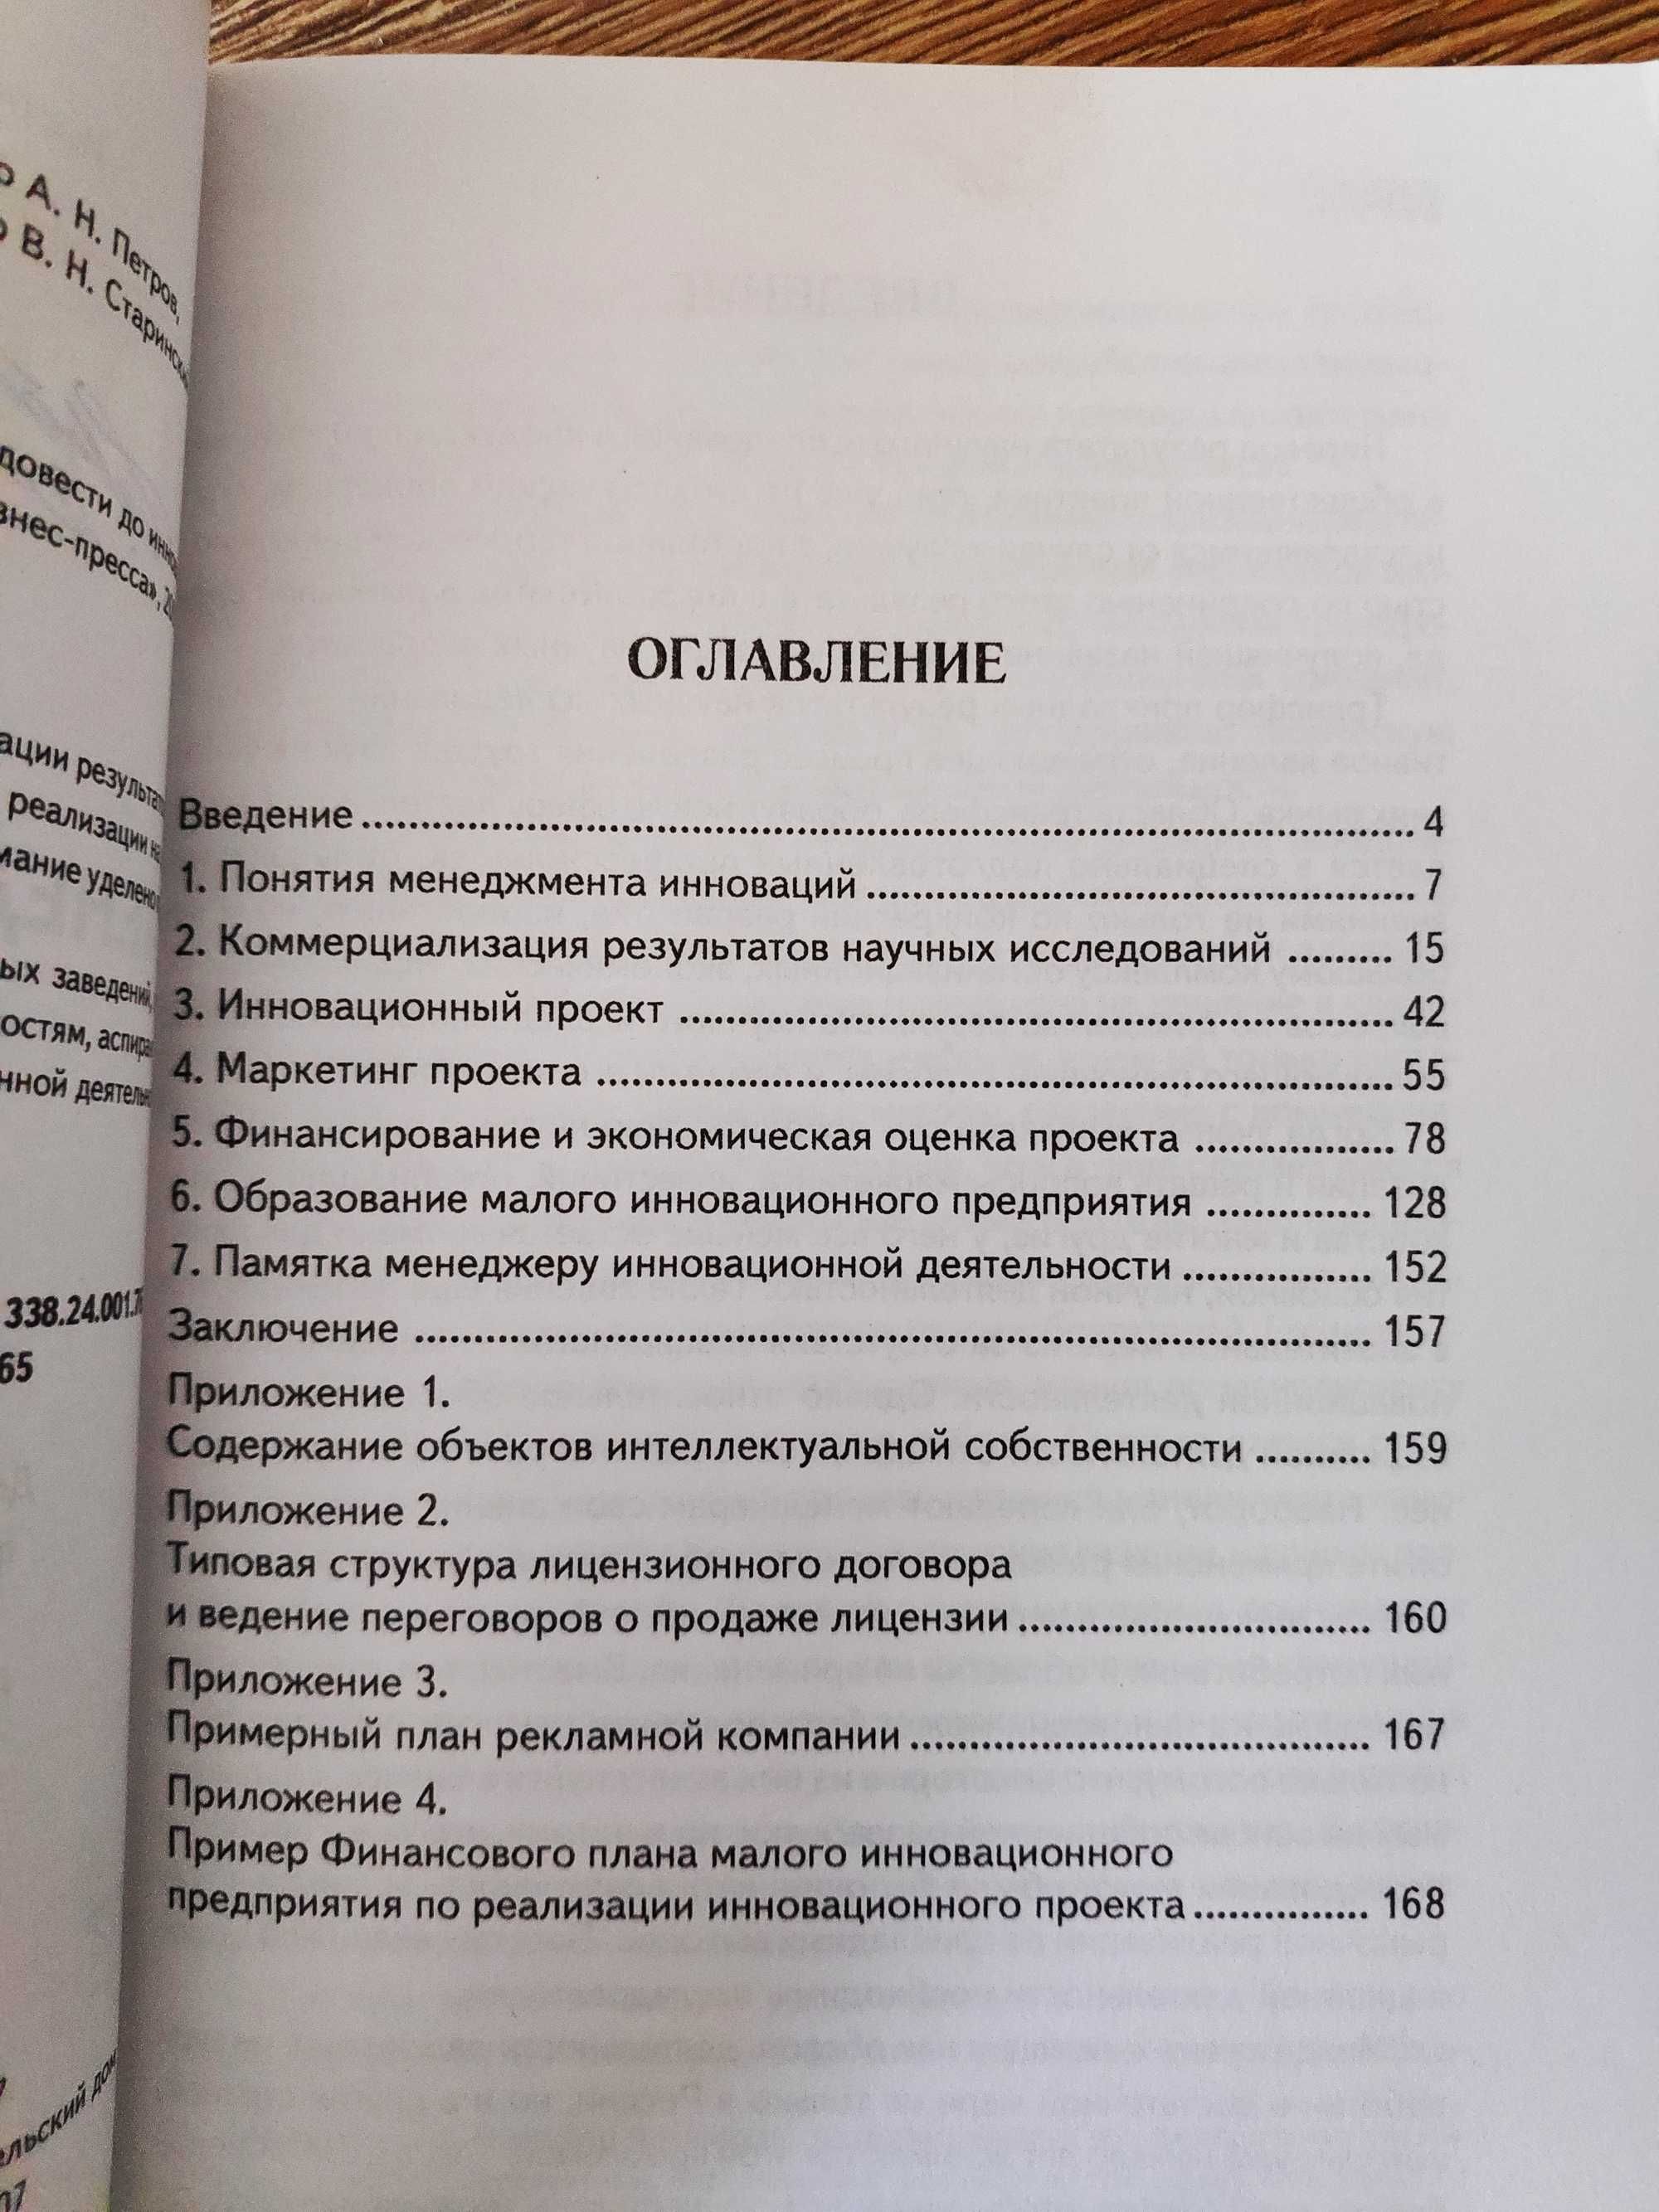 Книги по икономика на руски език